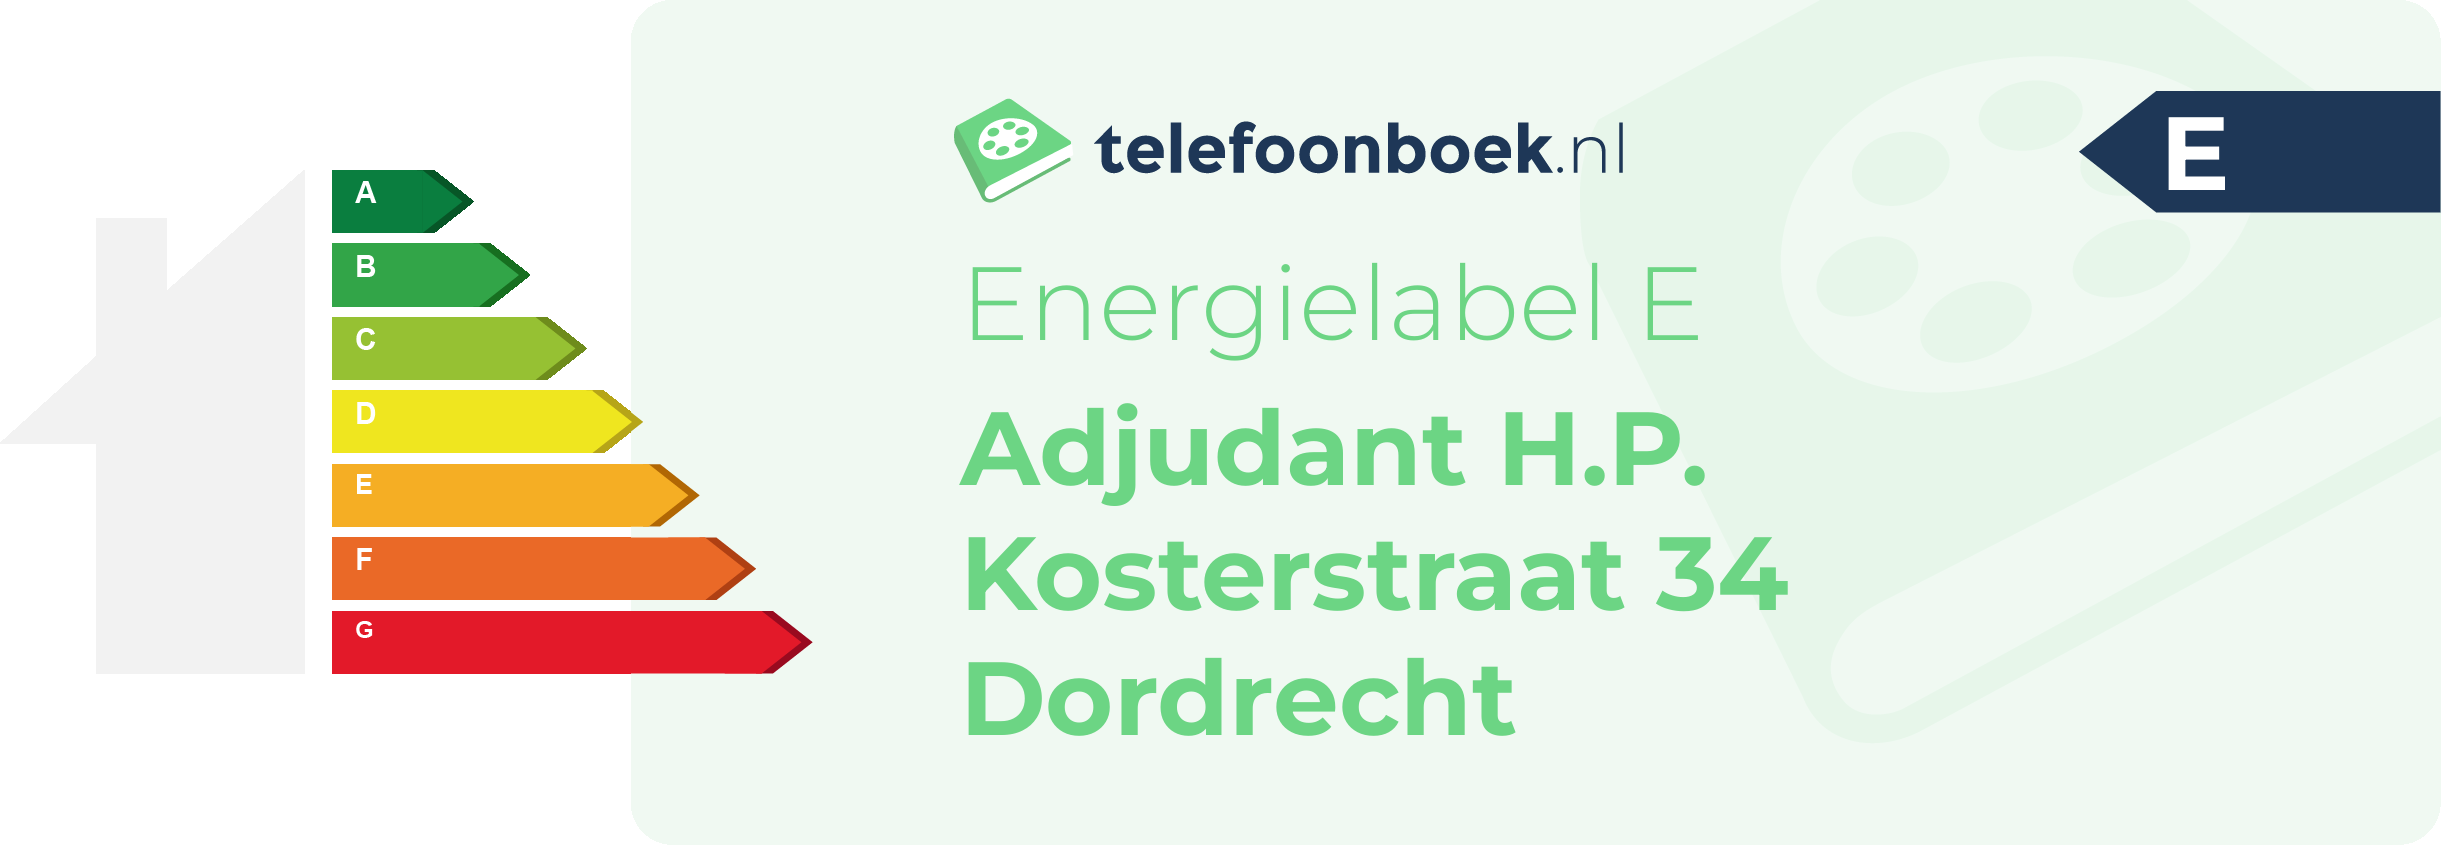 Energielabel Adjudant H.P. Kosterstraat 34 Dordrecht